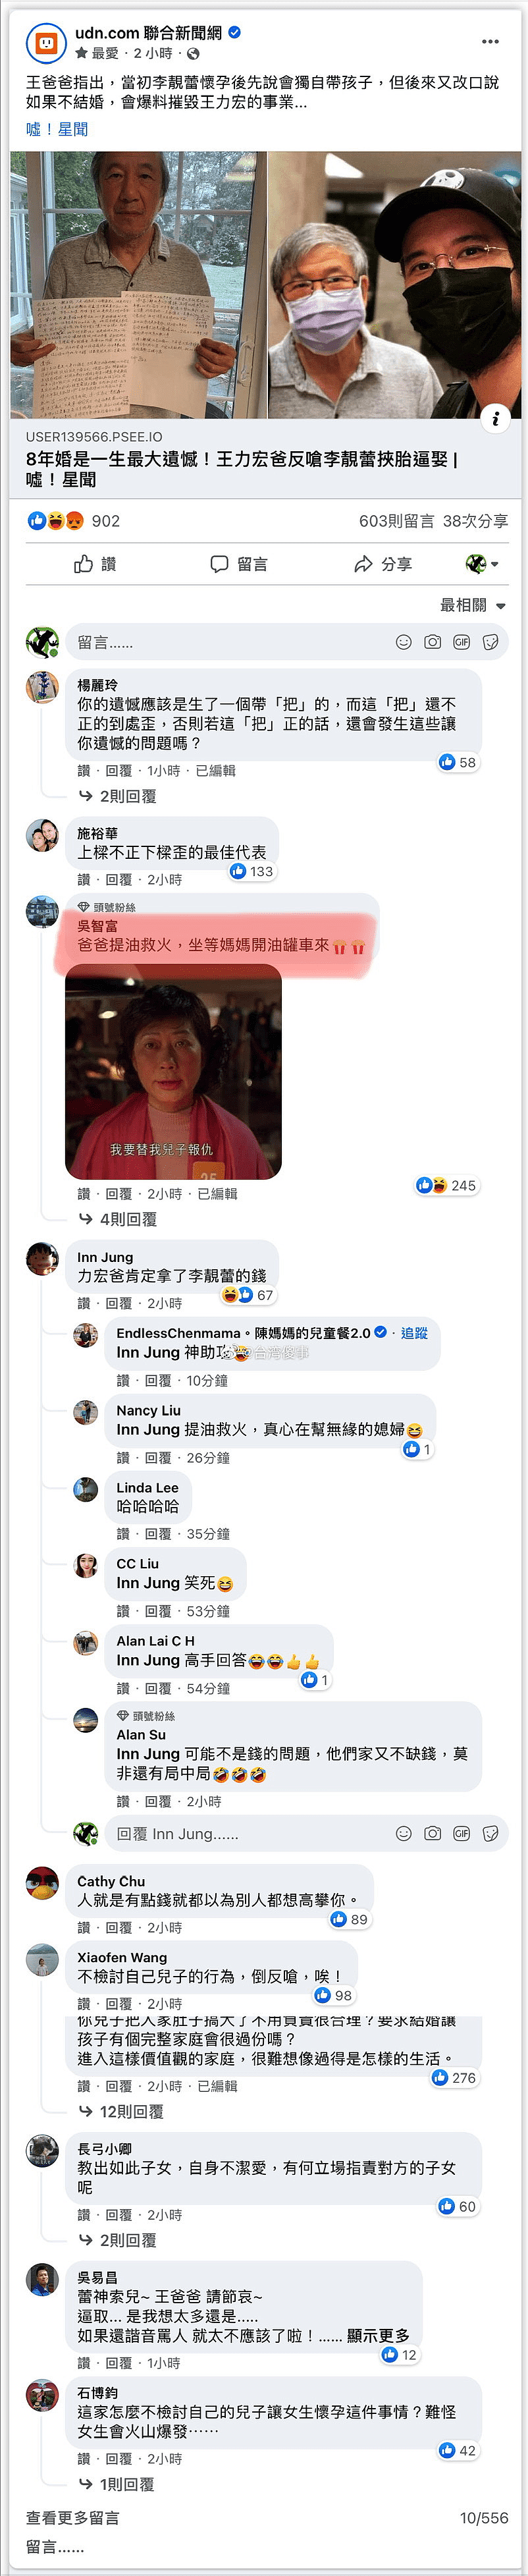 李靓蕾发文反驳王力宏父亲，台湾网友评论亮点多，调侃爸爸帮倒忙 - 14